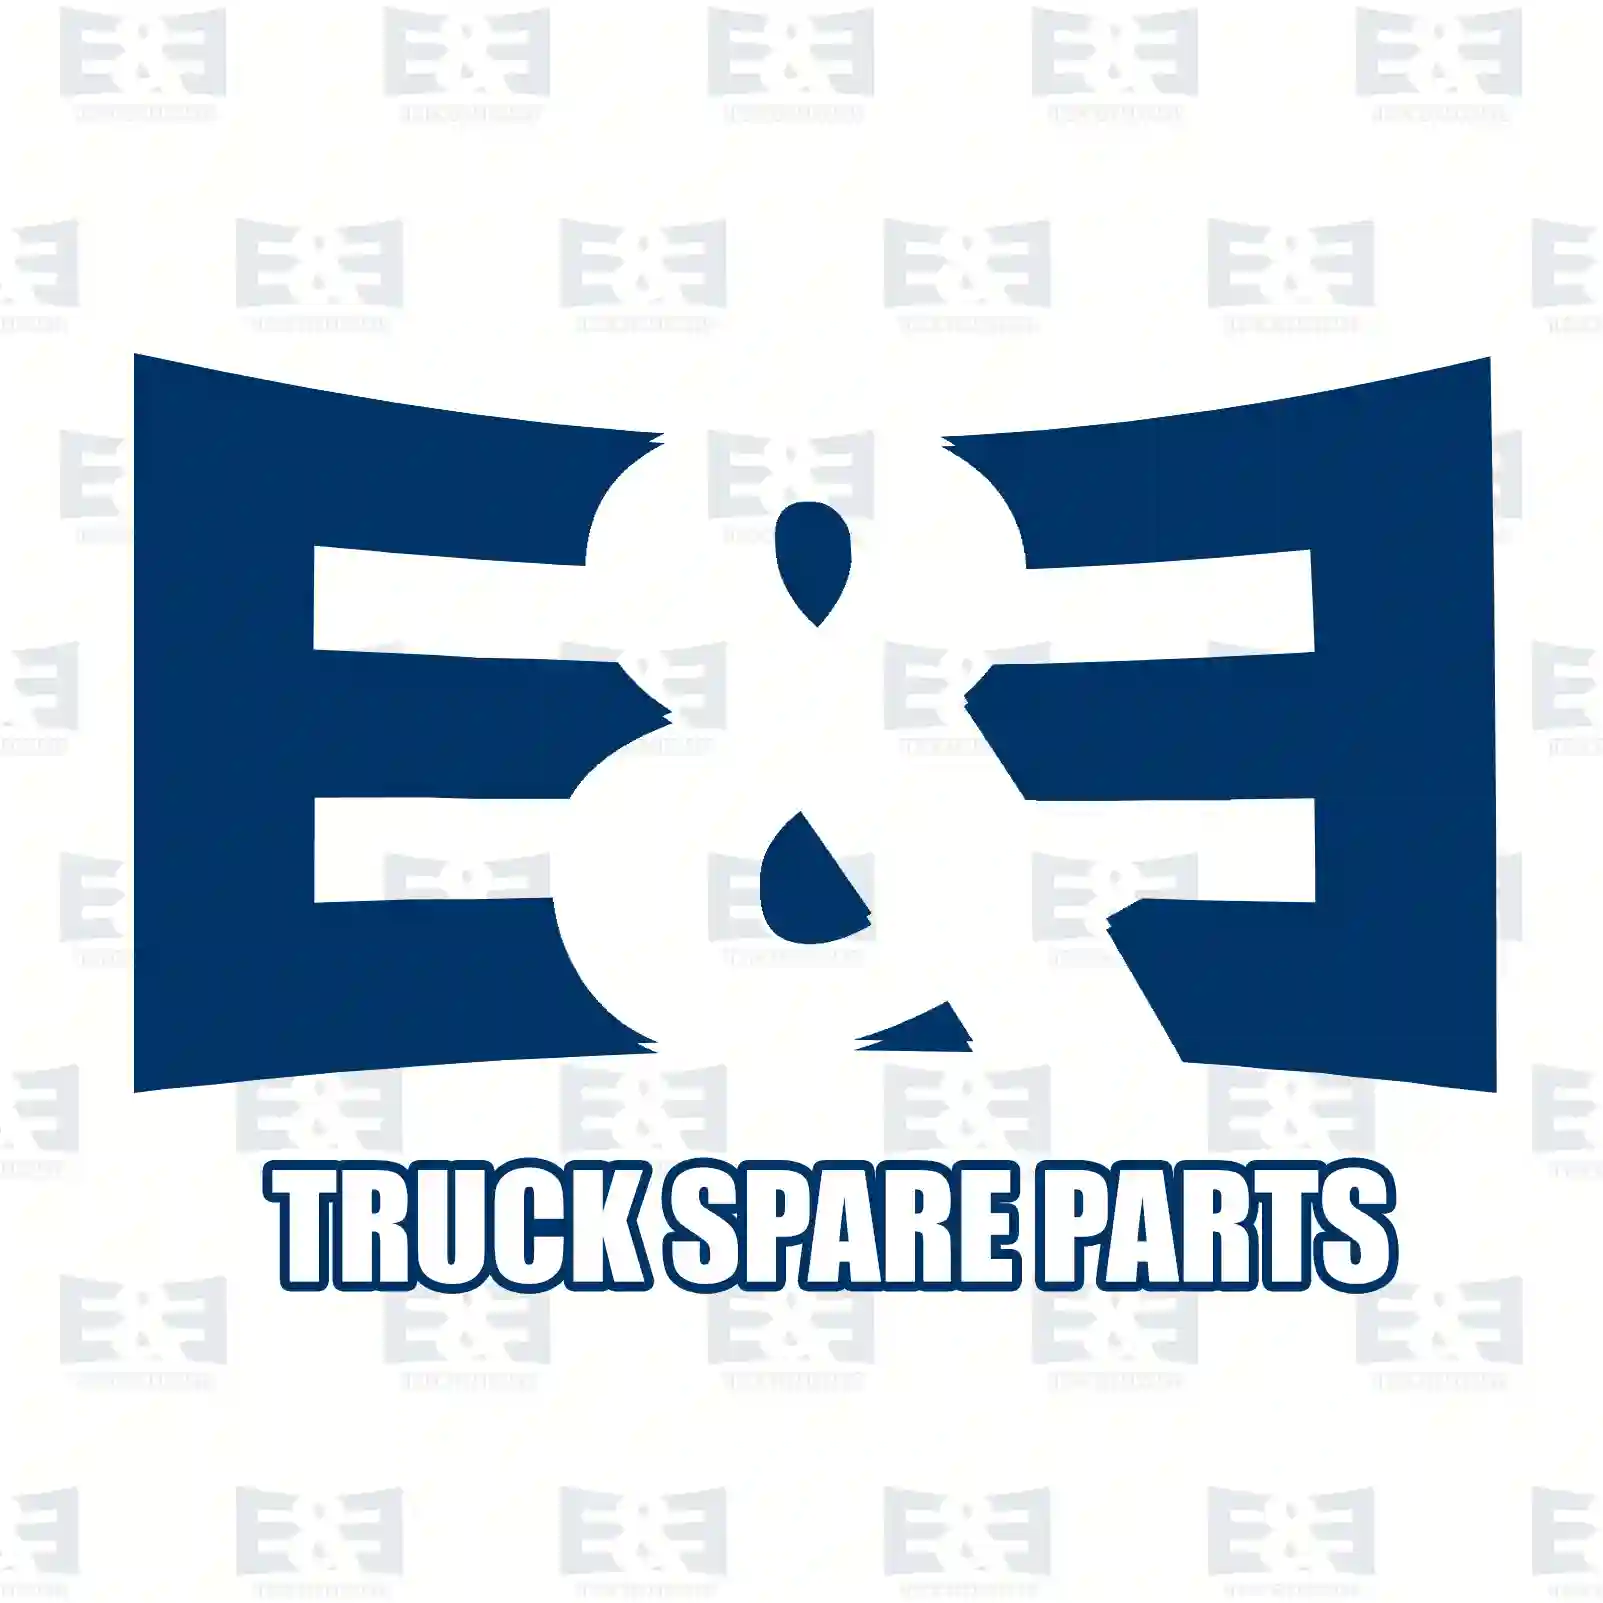 Clutch kit, 2E2288988, 81300006587, 813 ||  2E2288988 E&E Truck Spare Parts | Truck Spare Parts, Auotomotive Spare Parts Clutch kit, 2E2288988, 81300006587, 813 ||  2E2288988 E&E Truck Spare Parts | Truck Spare Parts, Auotomotive Spare Parts